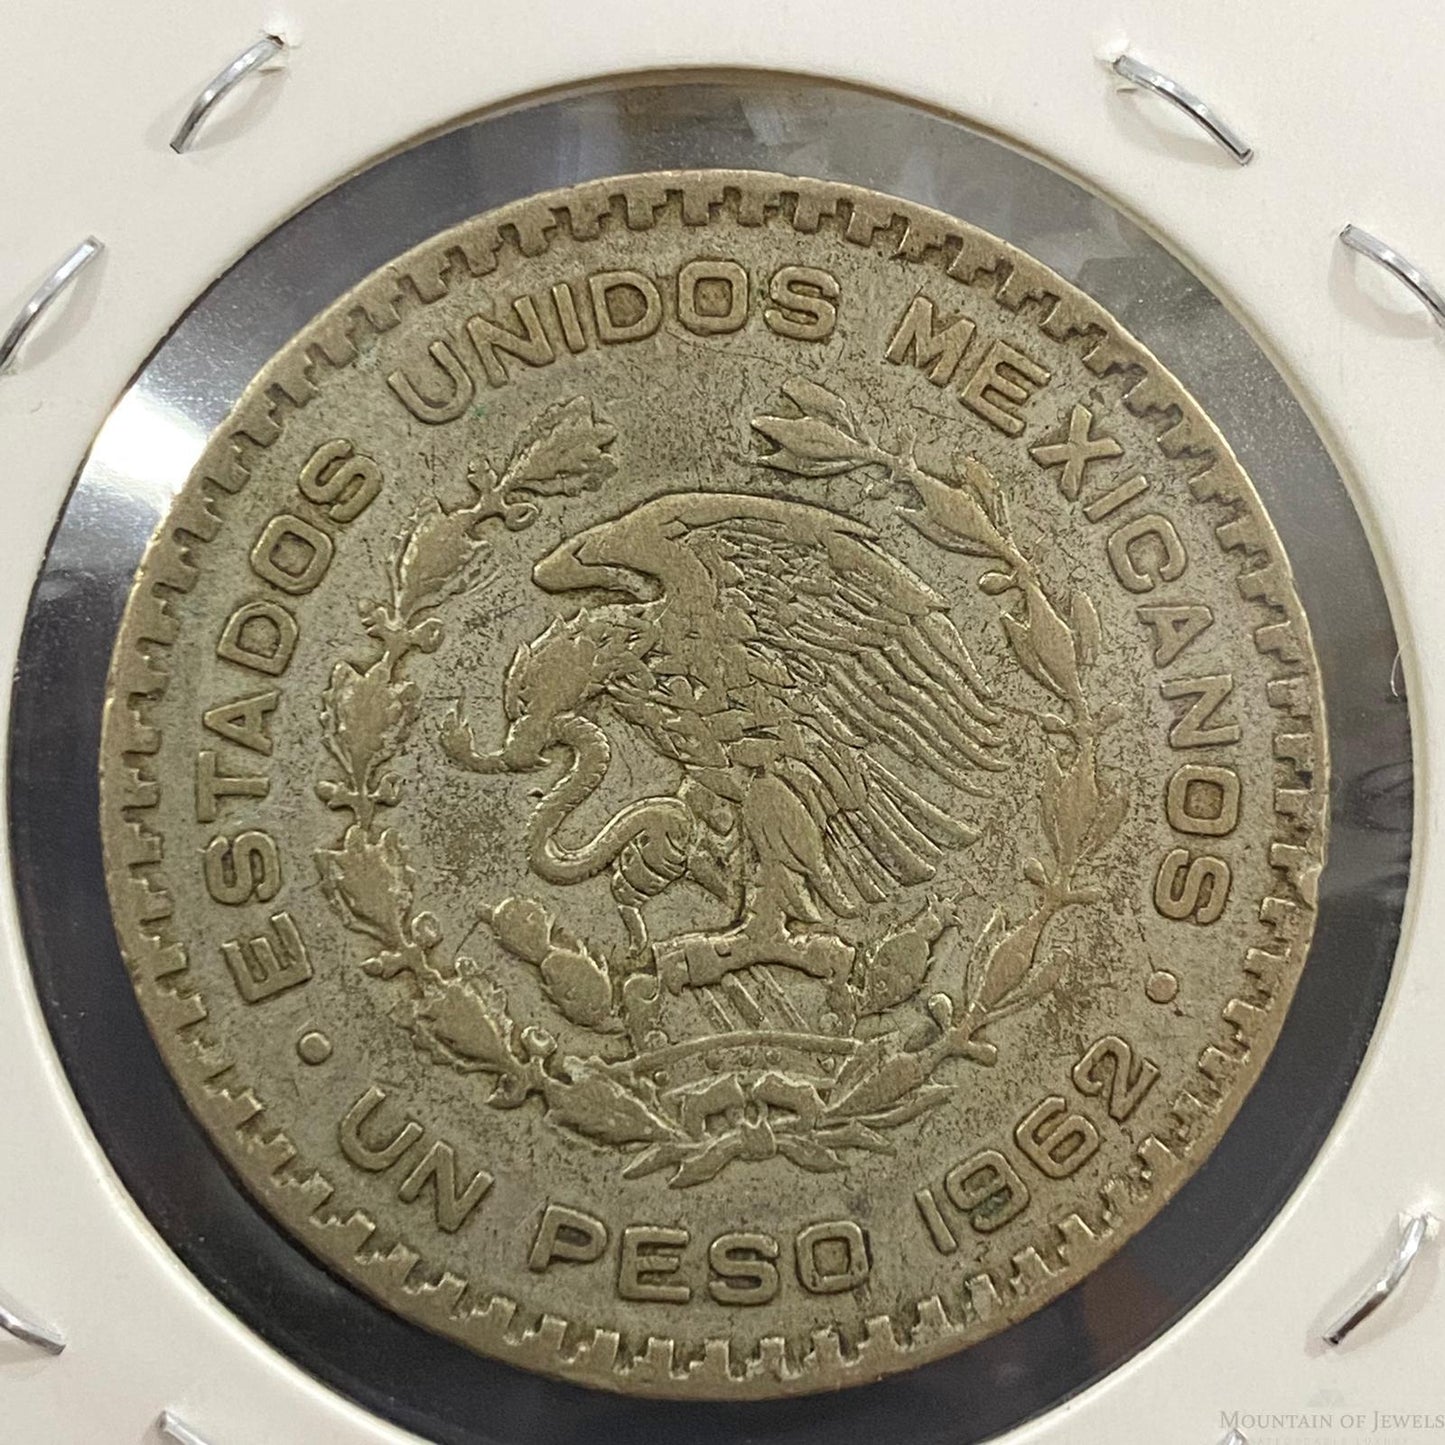 1962 Mexico 1 Peso Silver Coin #52023-14G